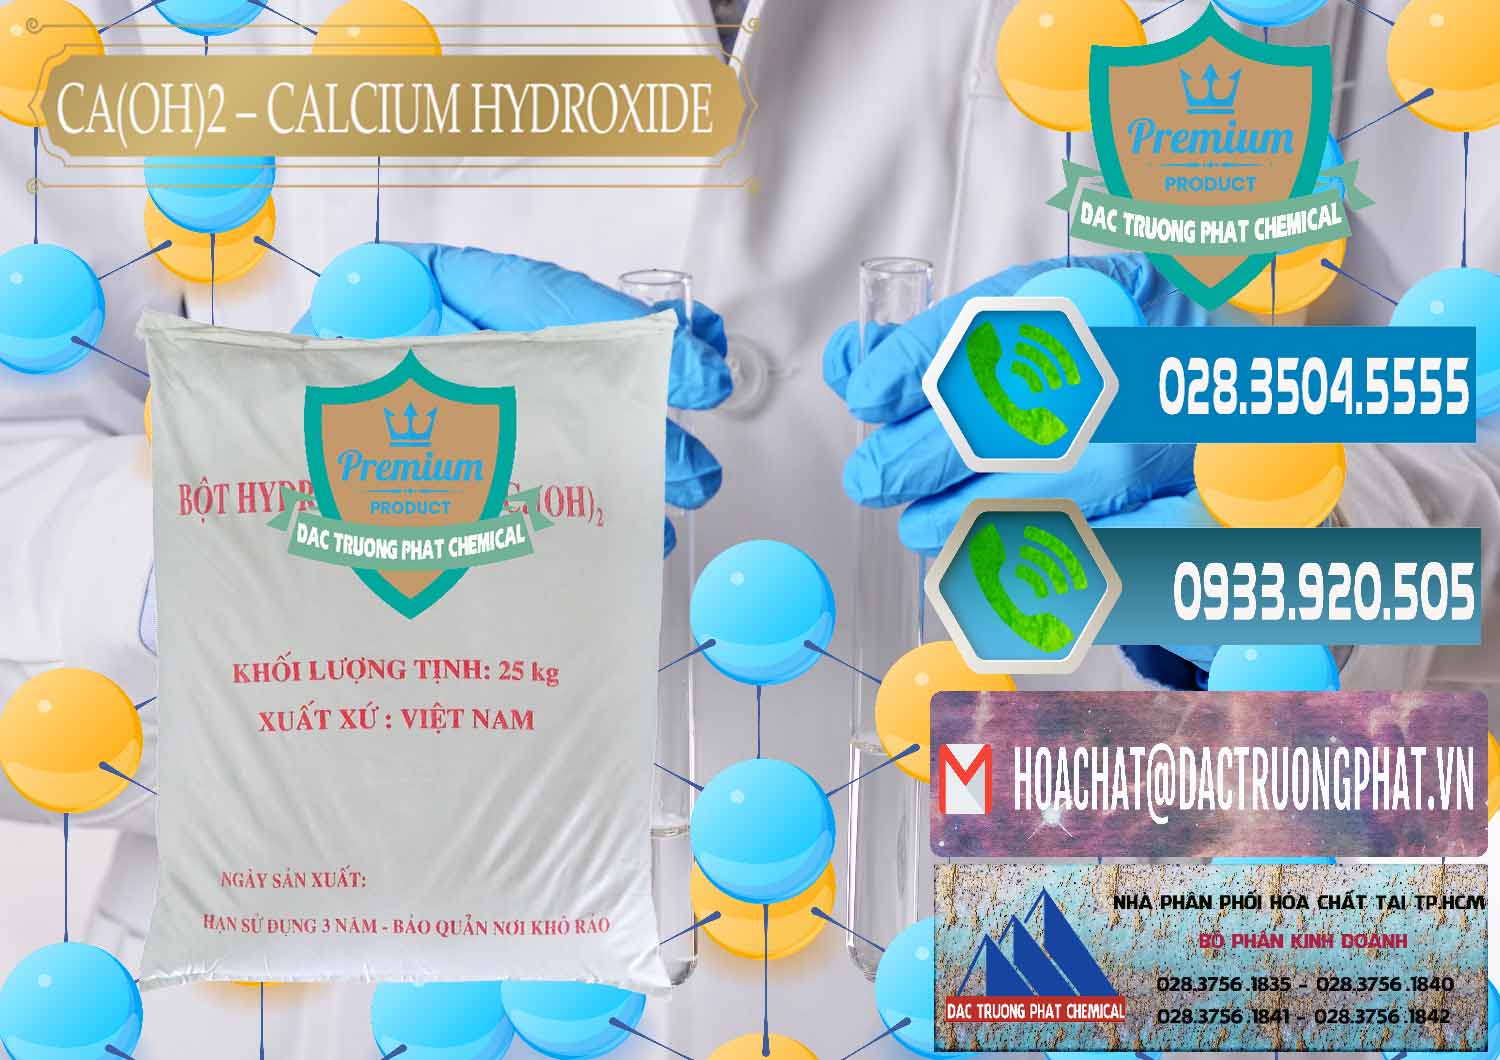 Cty chuyên kinh doanh - phân phối Ca(OH)2 - Calcium Hydroxide Việt Nam - 0186 - Công ty bán và phân phối hóa chất tại TP.HCM - congtyhoachat.net